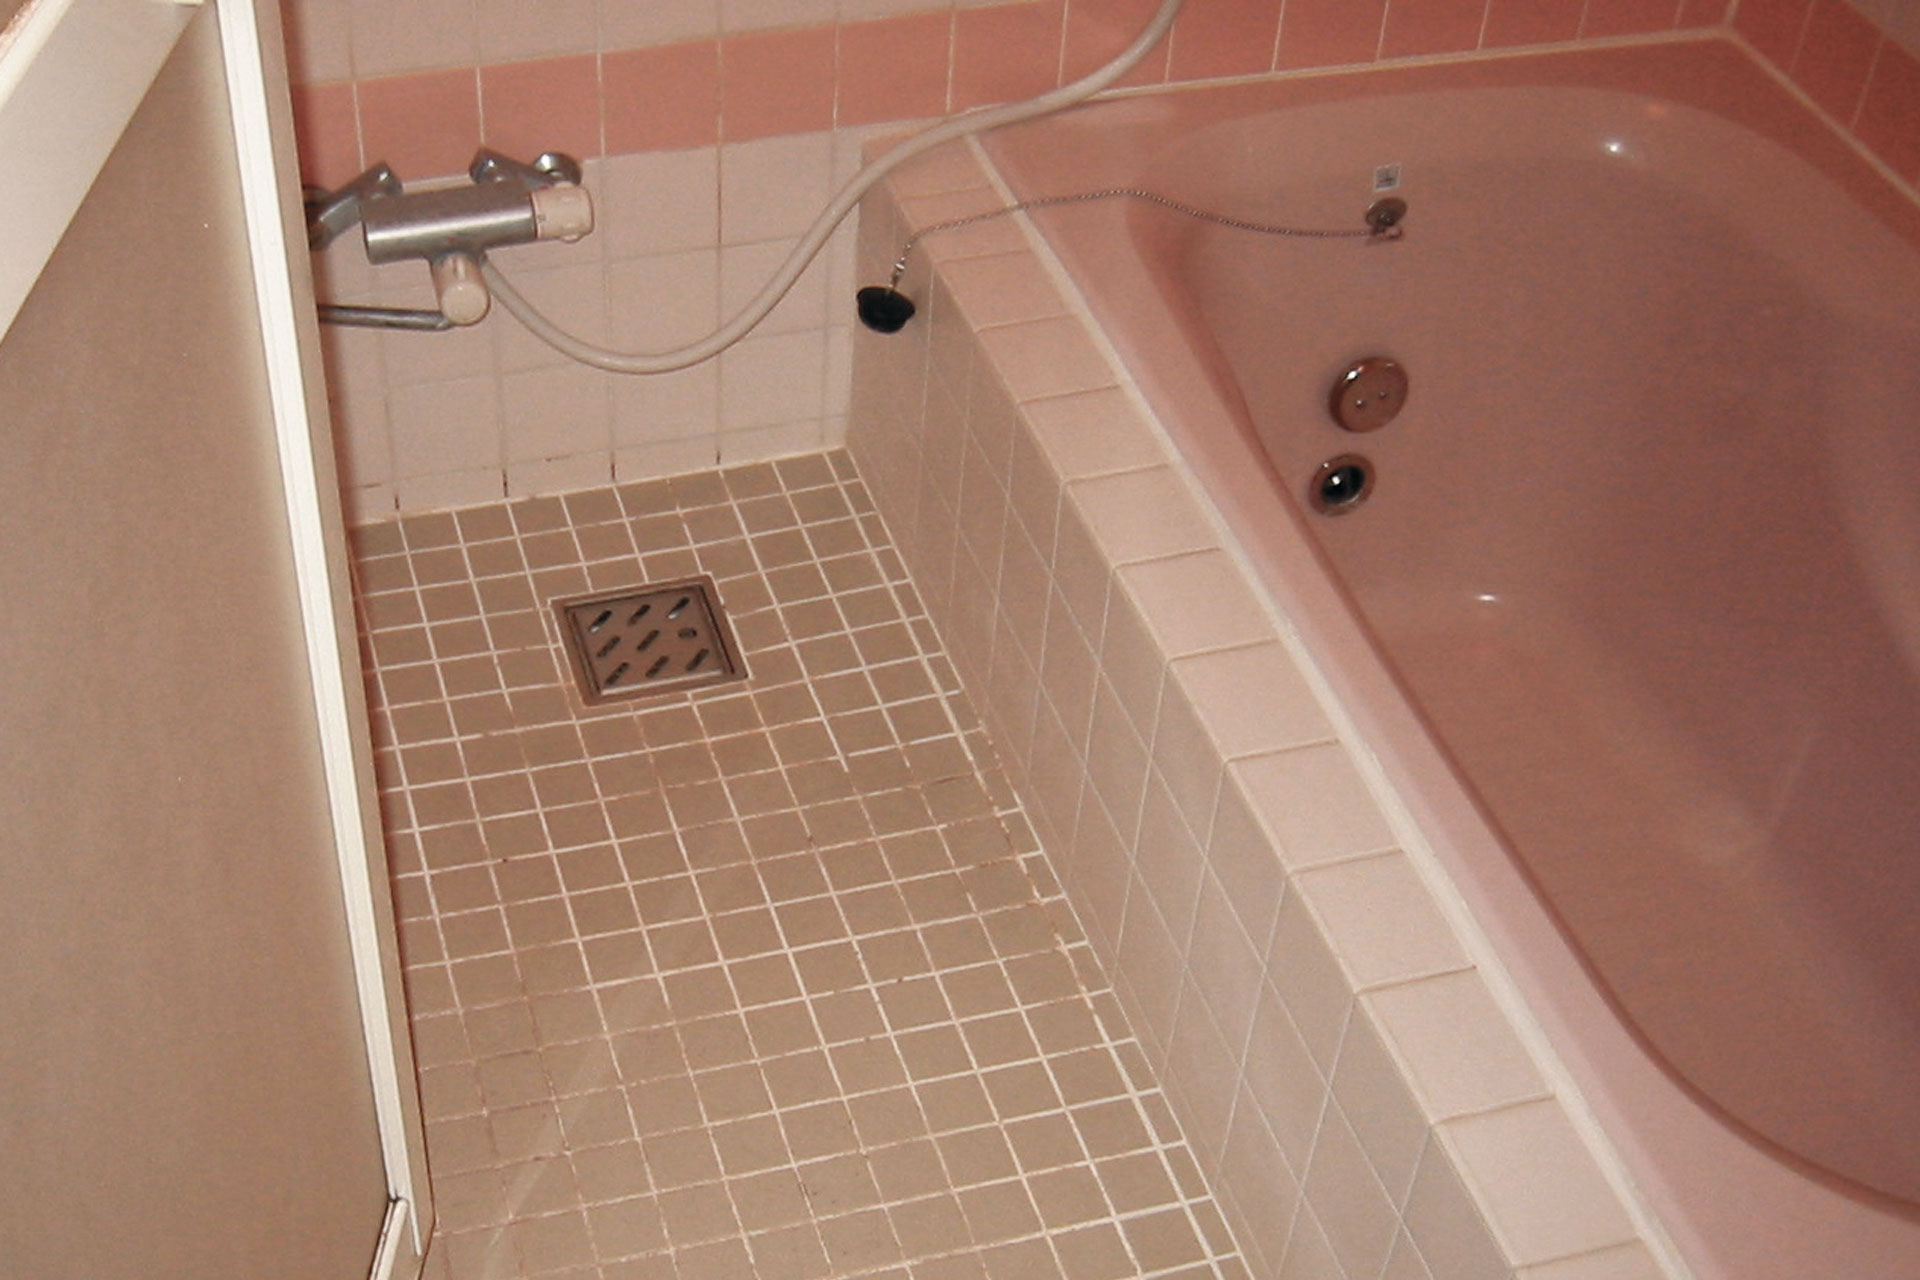 ハイブリッドストーン アベイラス スーパー浴室床材で改修する前のタイル床+FRP浴槽